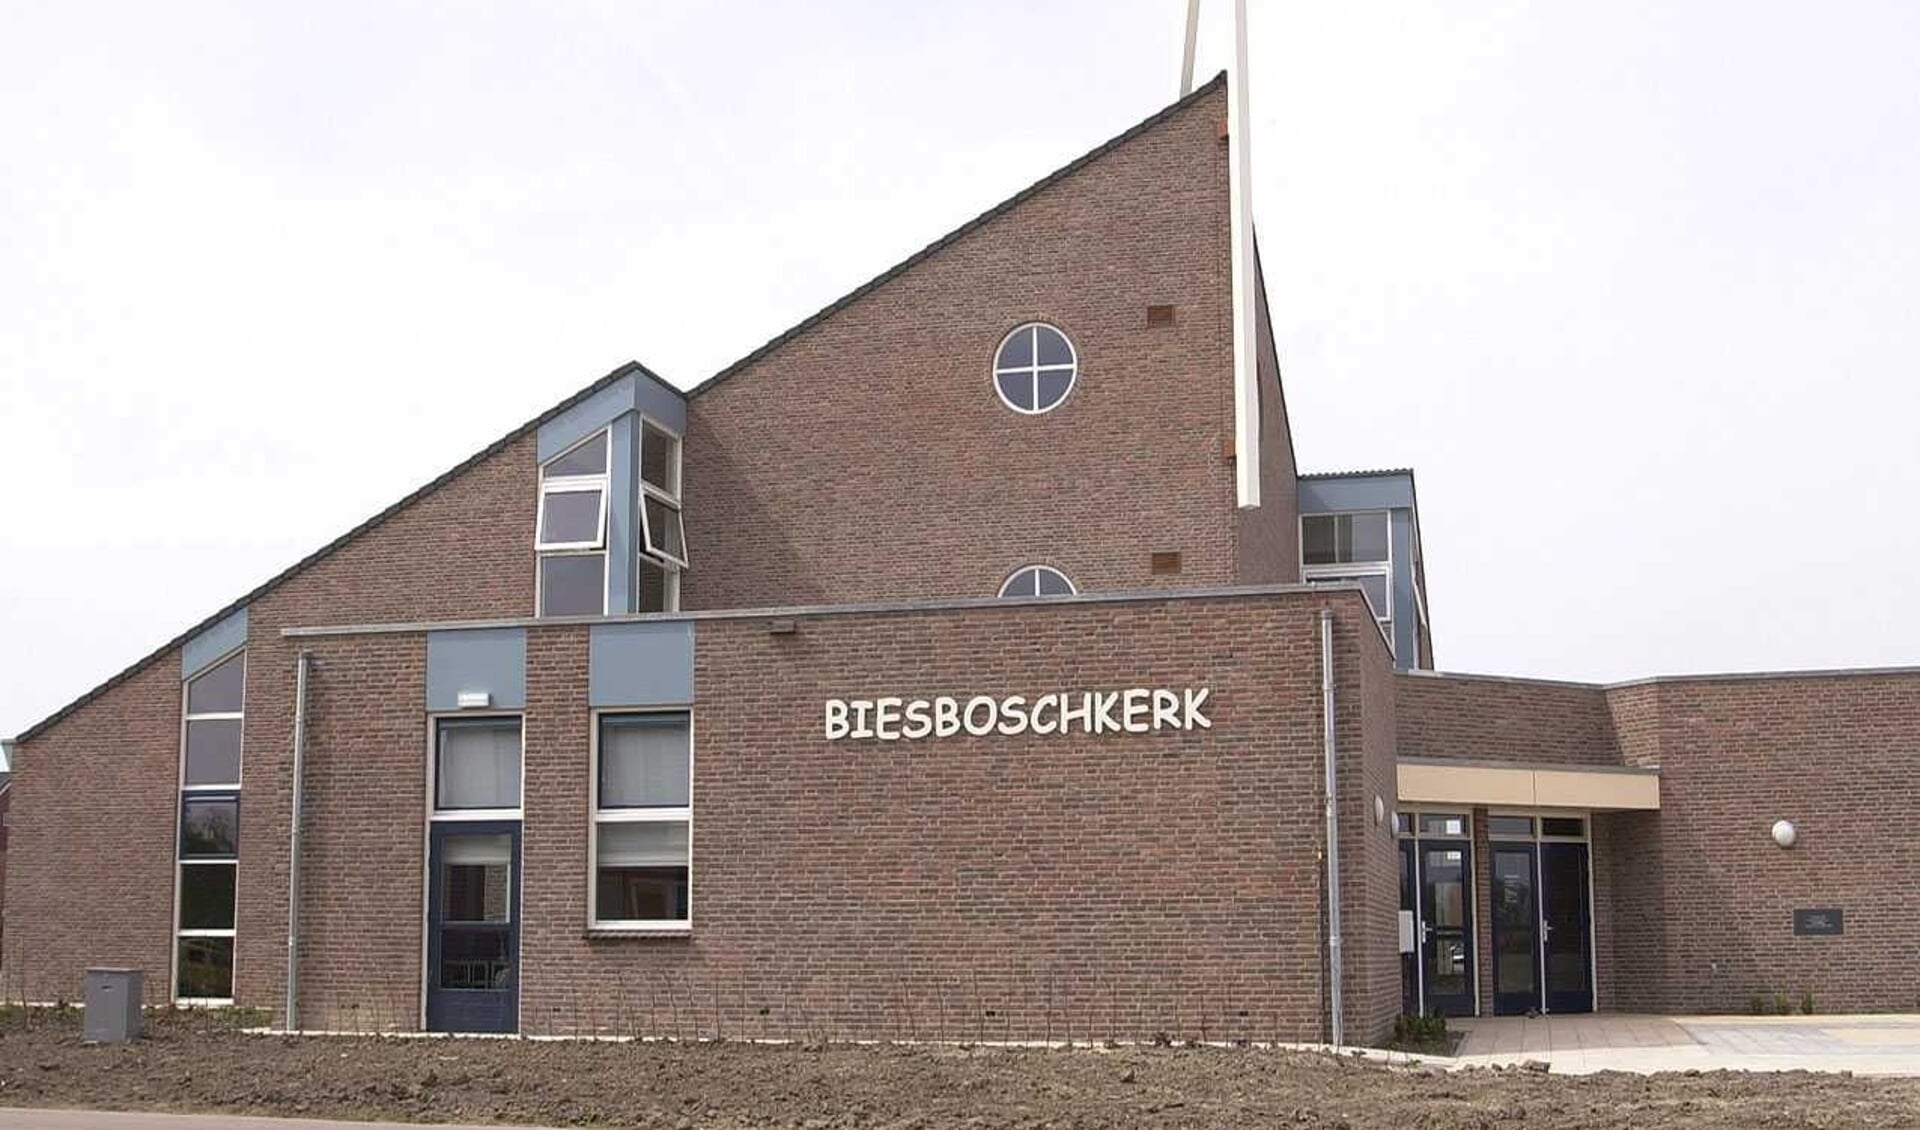 De jeugddienst wordt gehouden in de Biesboschkerk